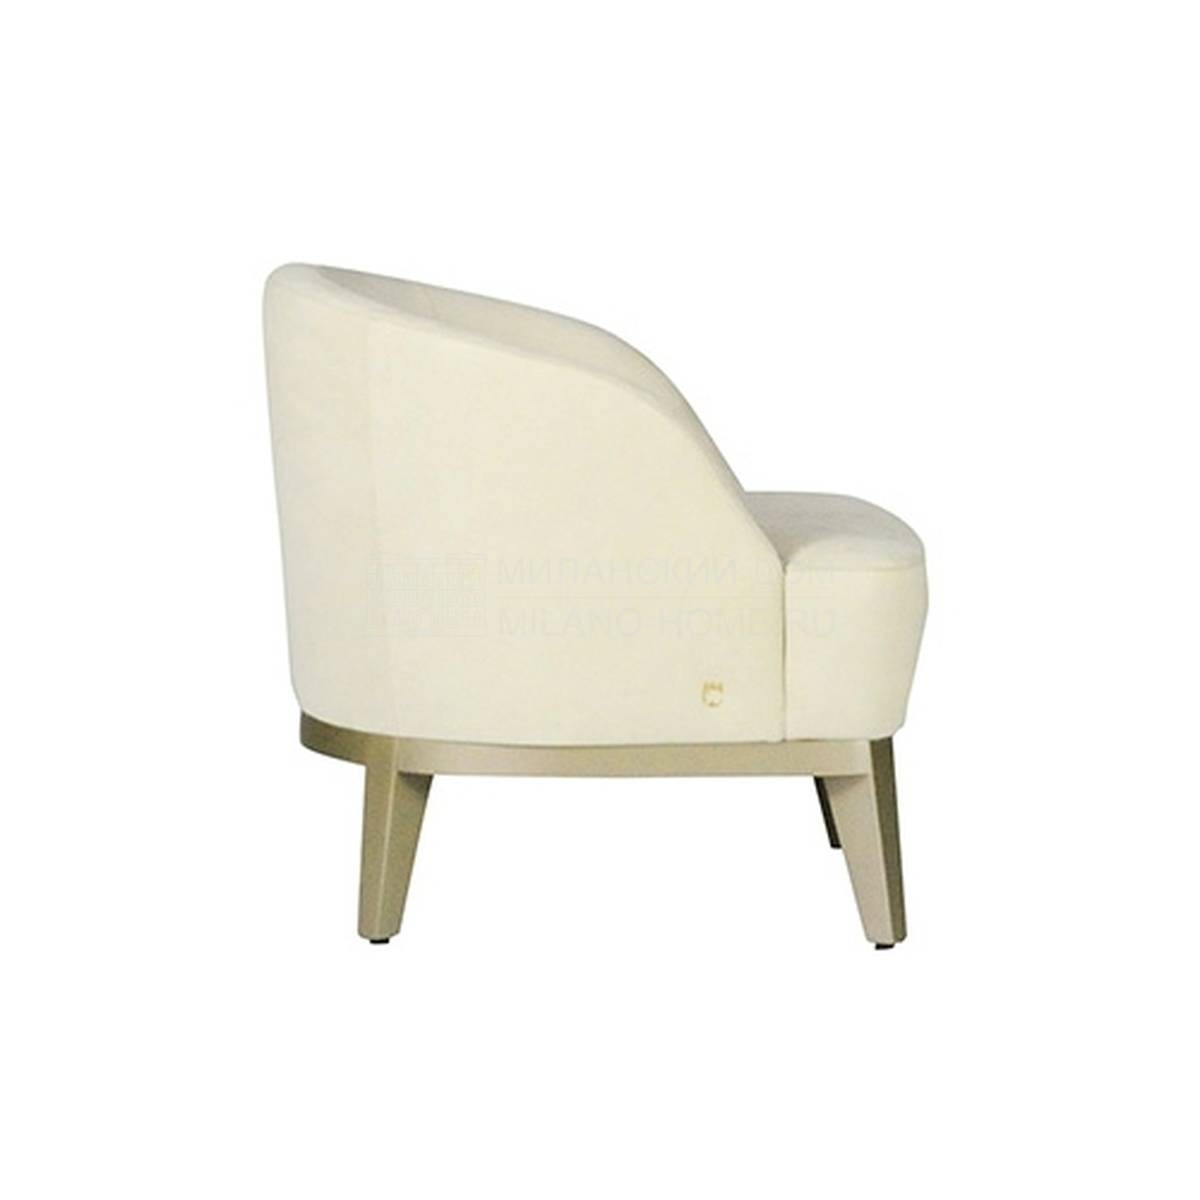 Кресло Venice armchair из Италии фабрики PAOLO CASTELLI